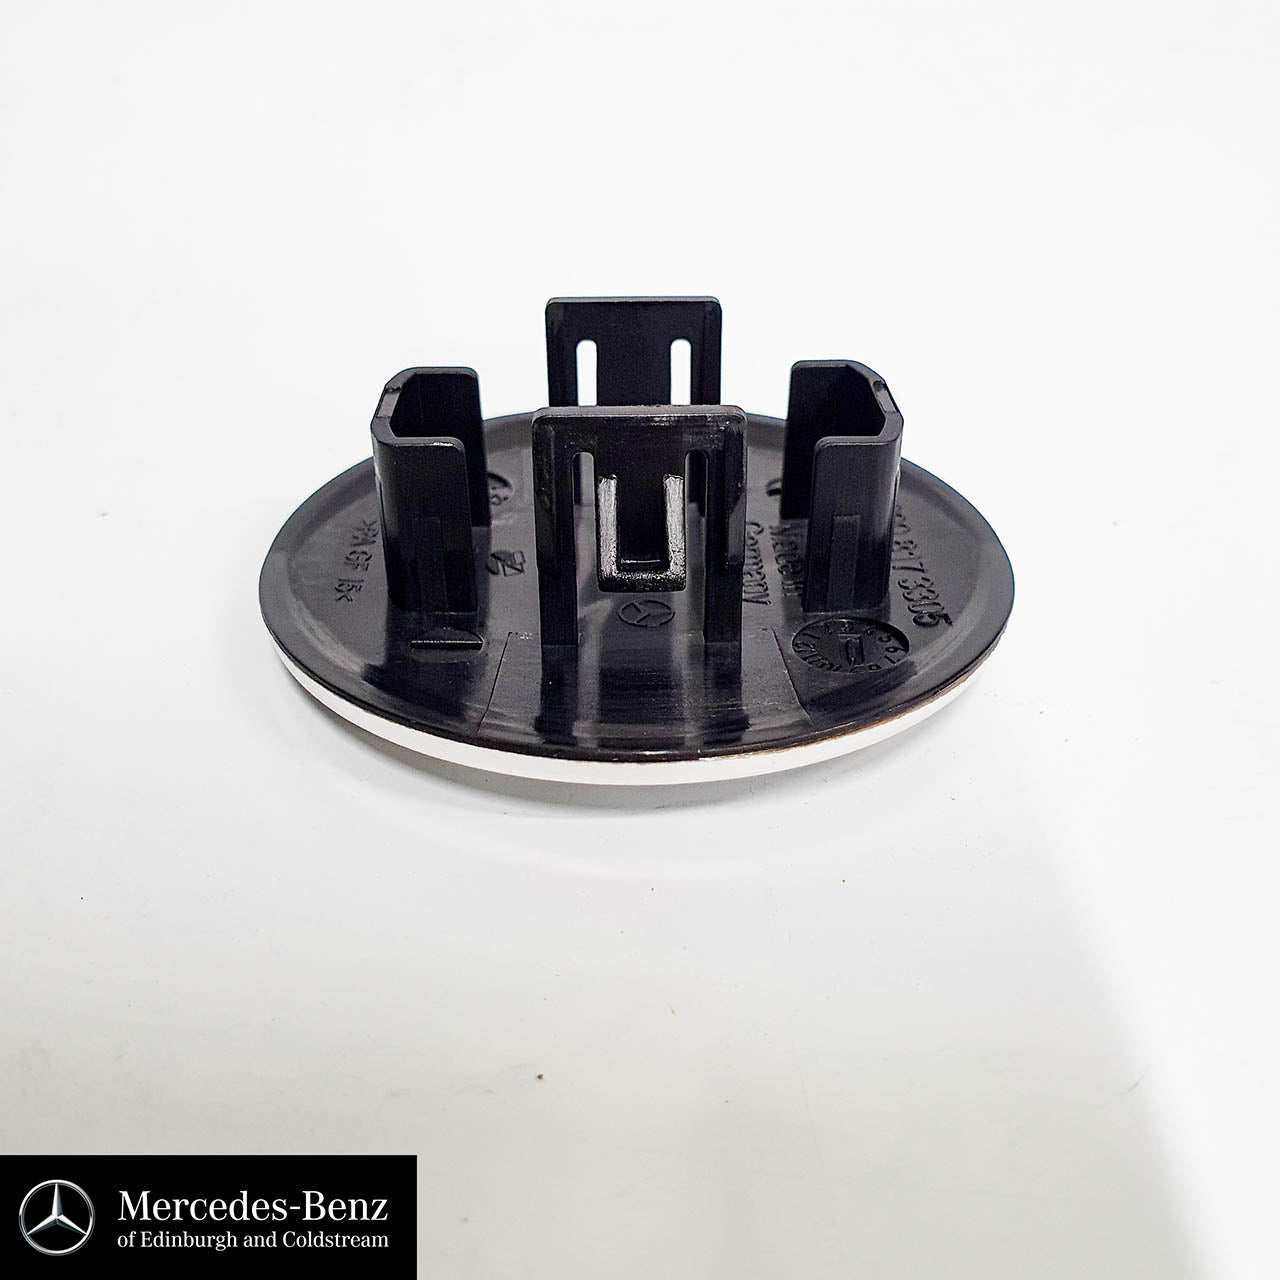 Genuine Mercedes-Benz Bonnet Badge front emblem Star logo BLACK